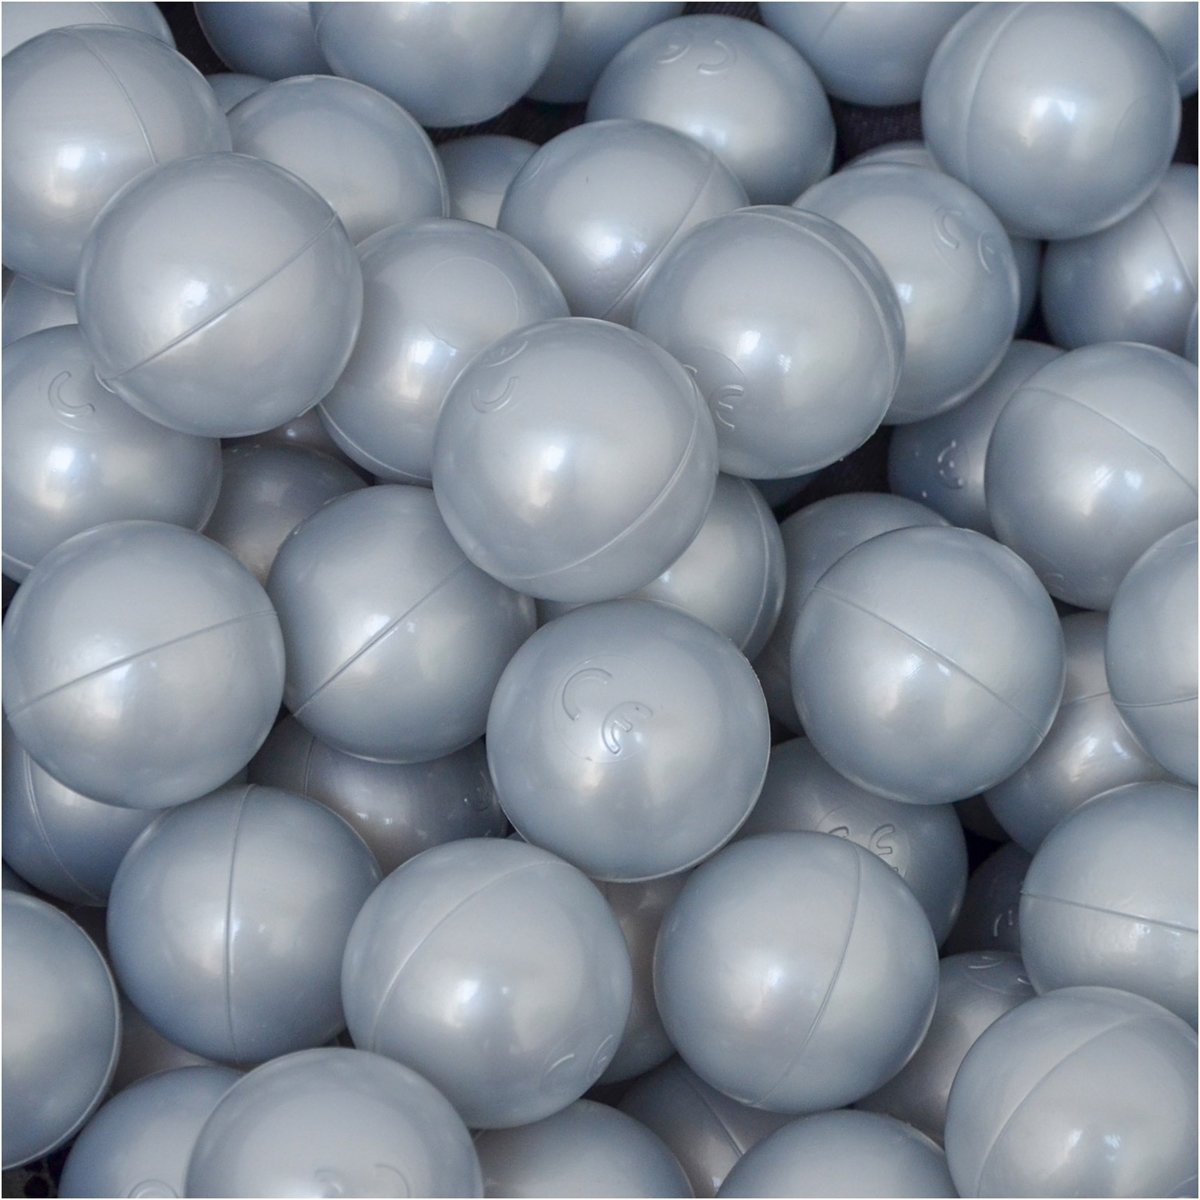 50 Babybalballen 5,5 cm Kinderbalbadje Kunststofballen Babyballen Zilver